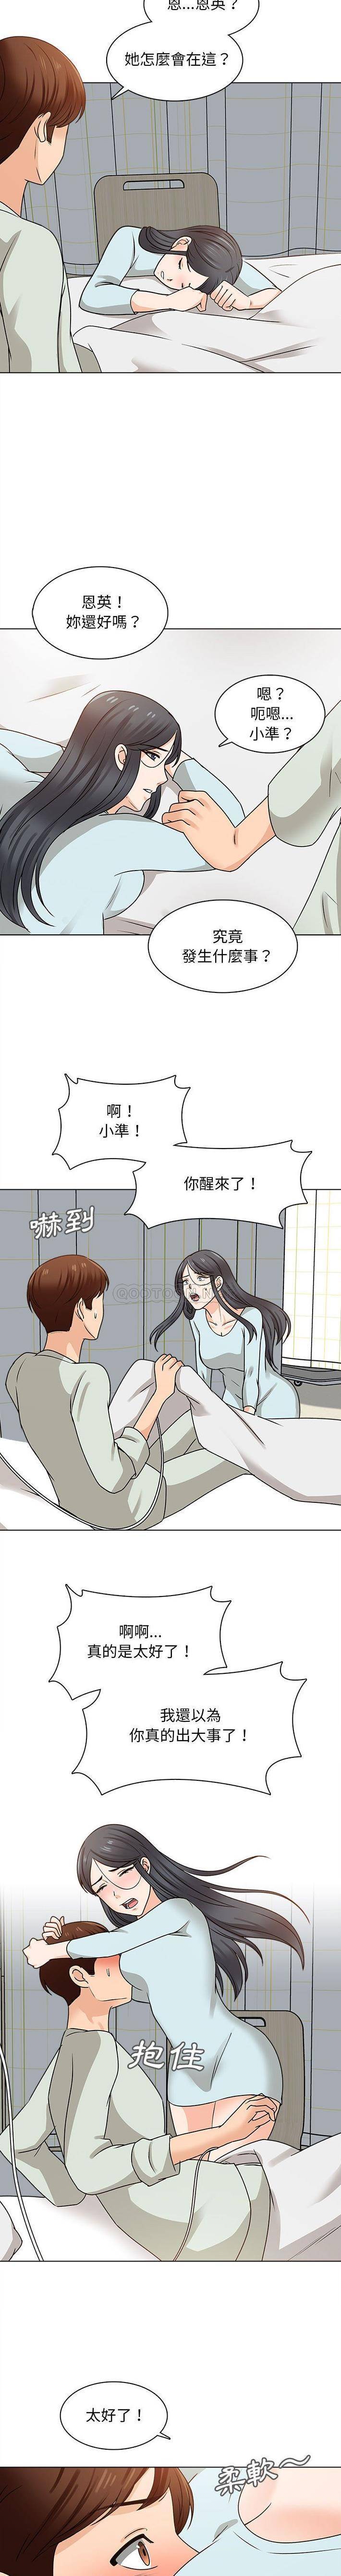 韩国污漫画 幸福公寓 第22话 10